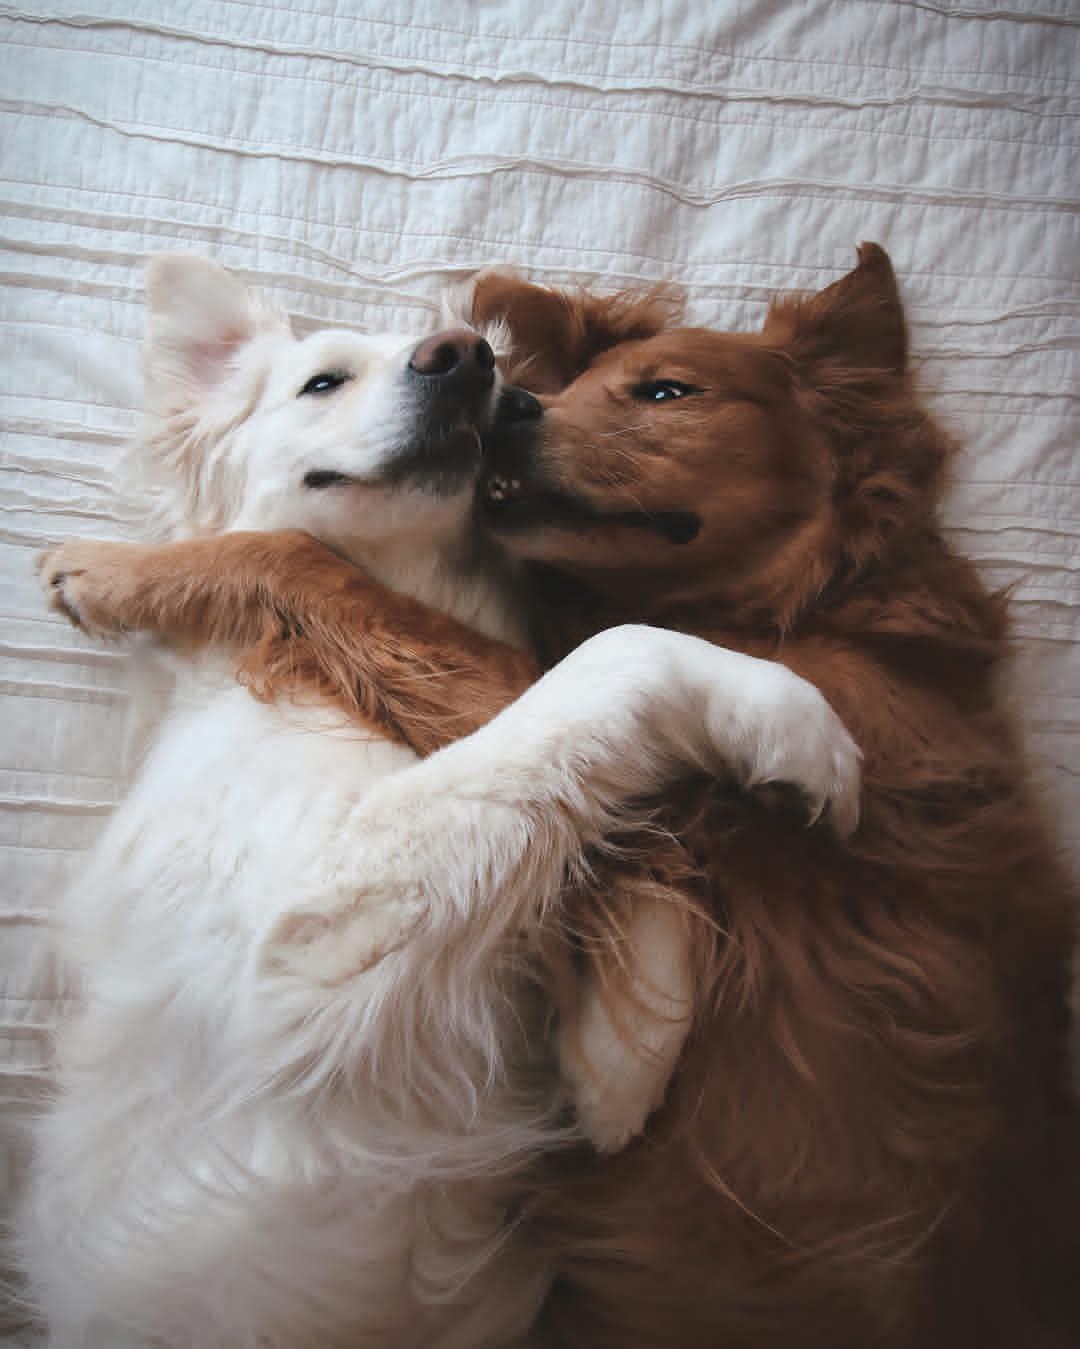 Chó lúc nào cũng dính lấy nhau: Những hình ảnh về chó lúc nào cũng bên nhau này sẽ khiến bạn cảm thấy ấm lòng. Chúng ta sẽ thấy tình bạn, tình đoàn kết giữa các chú chó đã có một ngày tuyệt vời và vui tươi bên nhau.